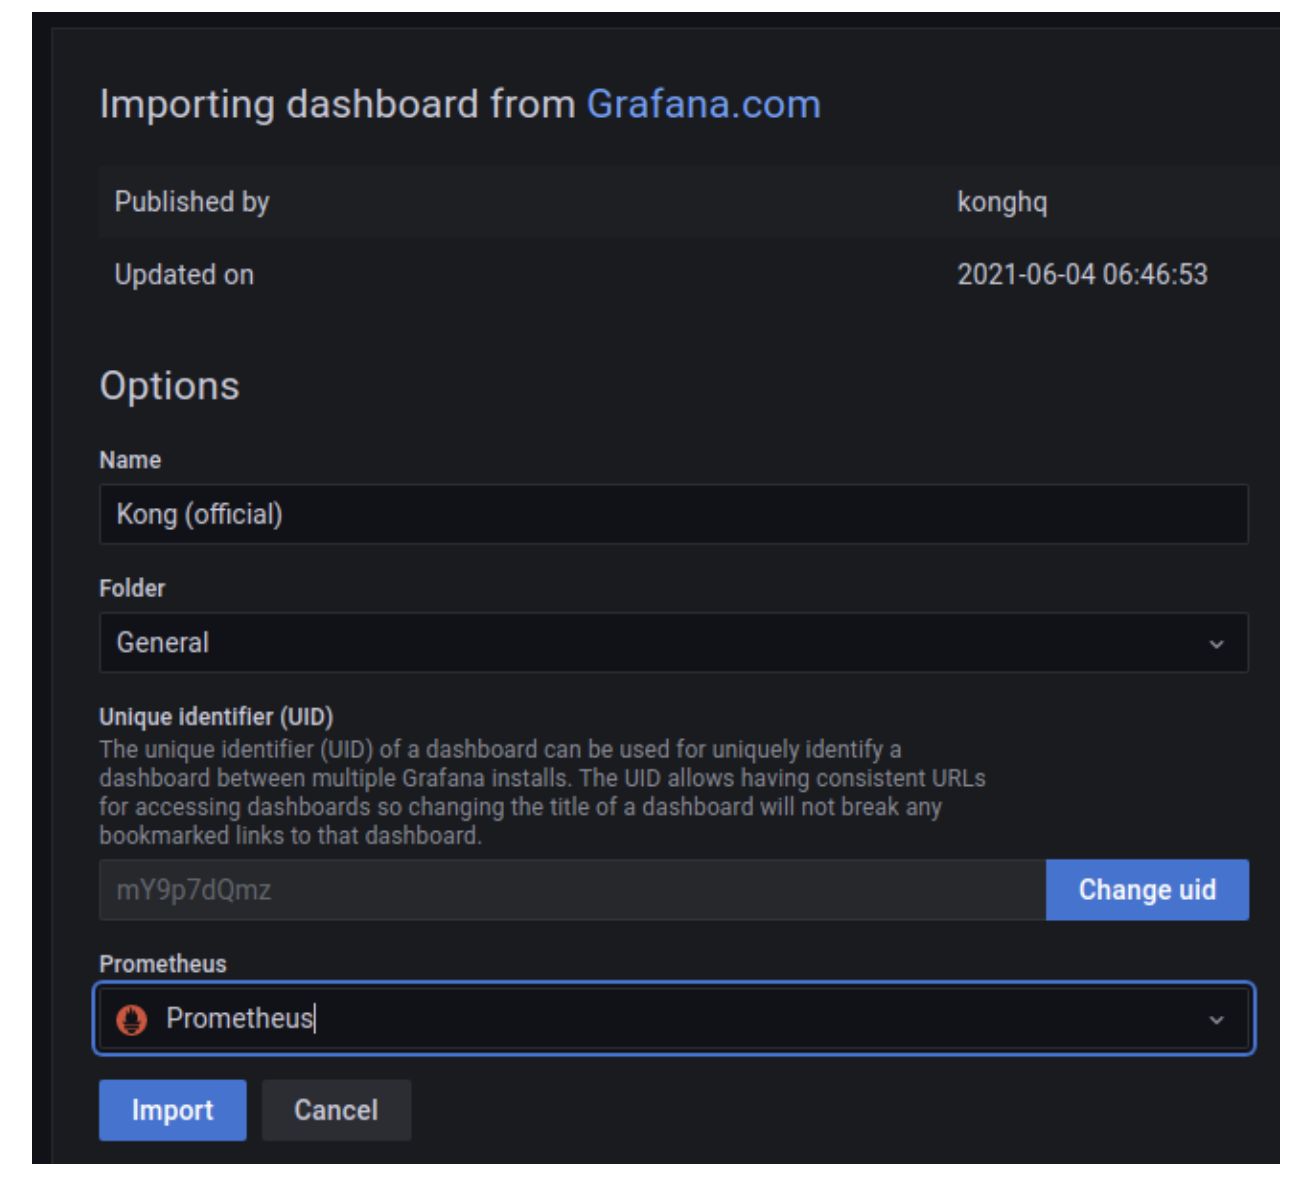 Snapshot - 15: Importing dashboard from Grafana